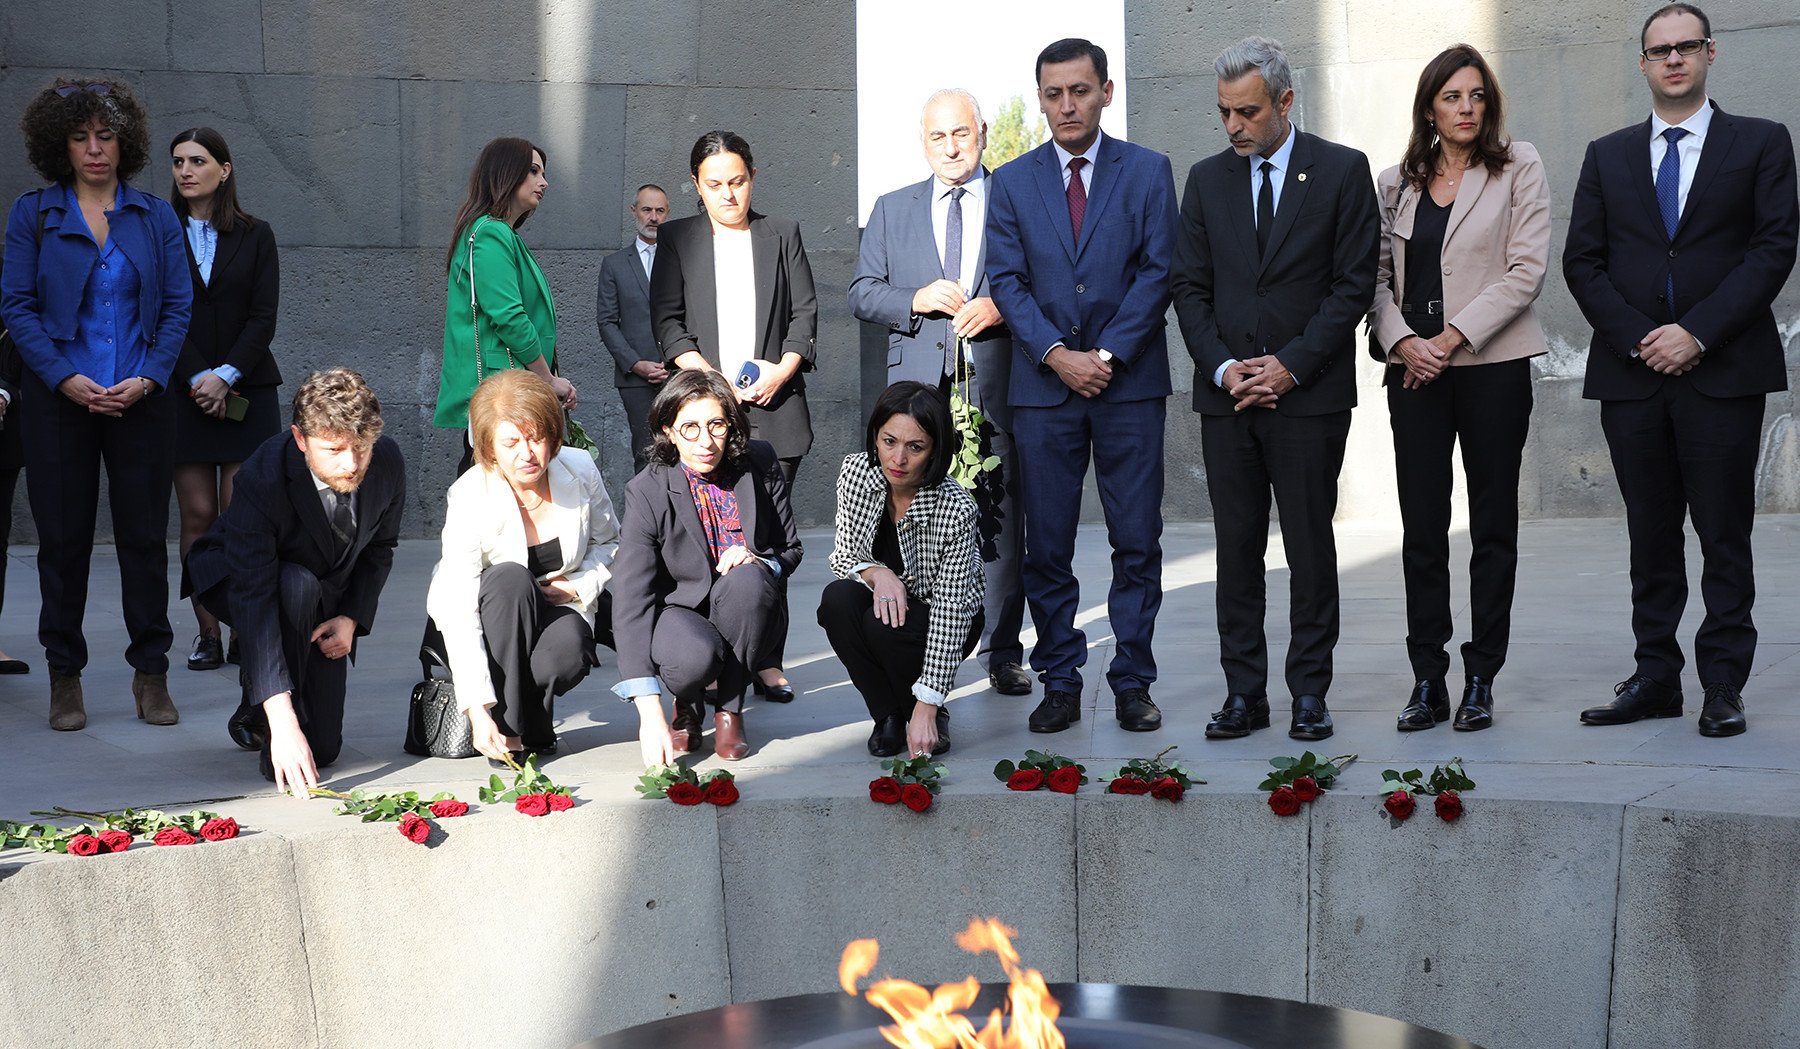 Ֆրանսիայի մշակույթի նախարարը Հայաստանում է. պատվիրակությունը հարգանքի տուրք է մատուցել Մեծ եղեռնի զոհերի հիշատակին